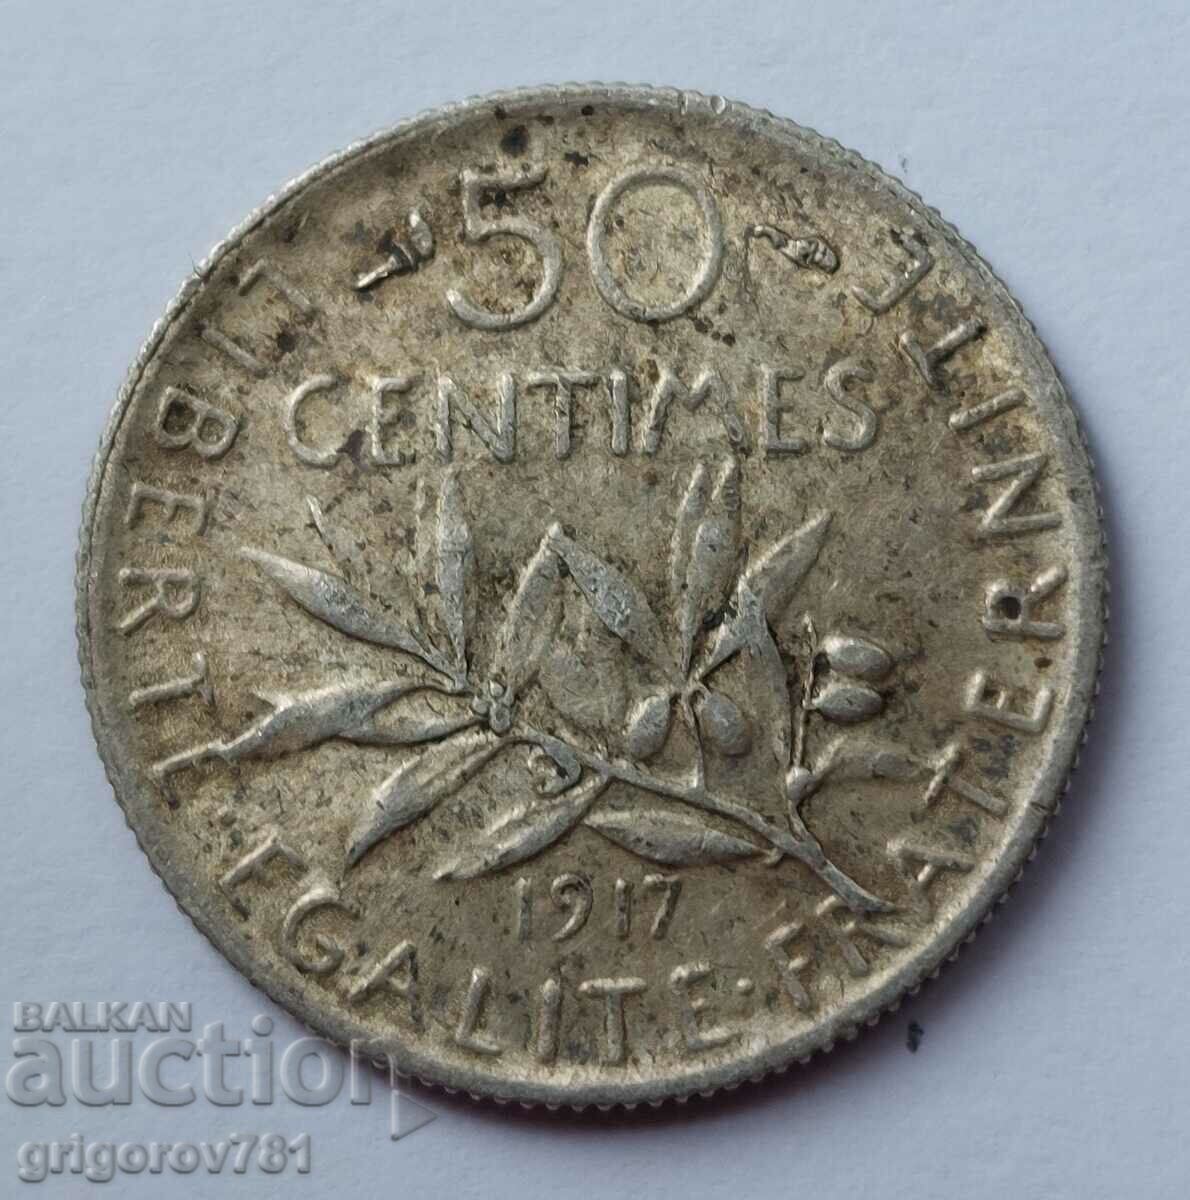 Ασημένιο 50 εκατοστά Γαλλία 1917 - ασημένιο νόμισμα №35